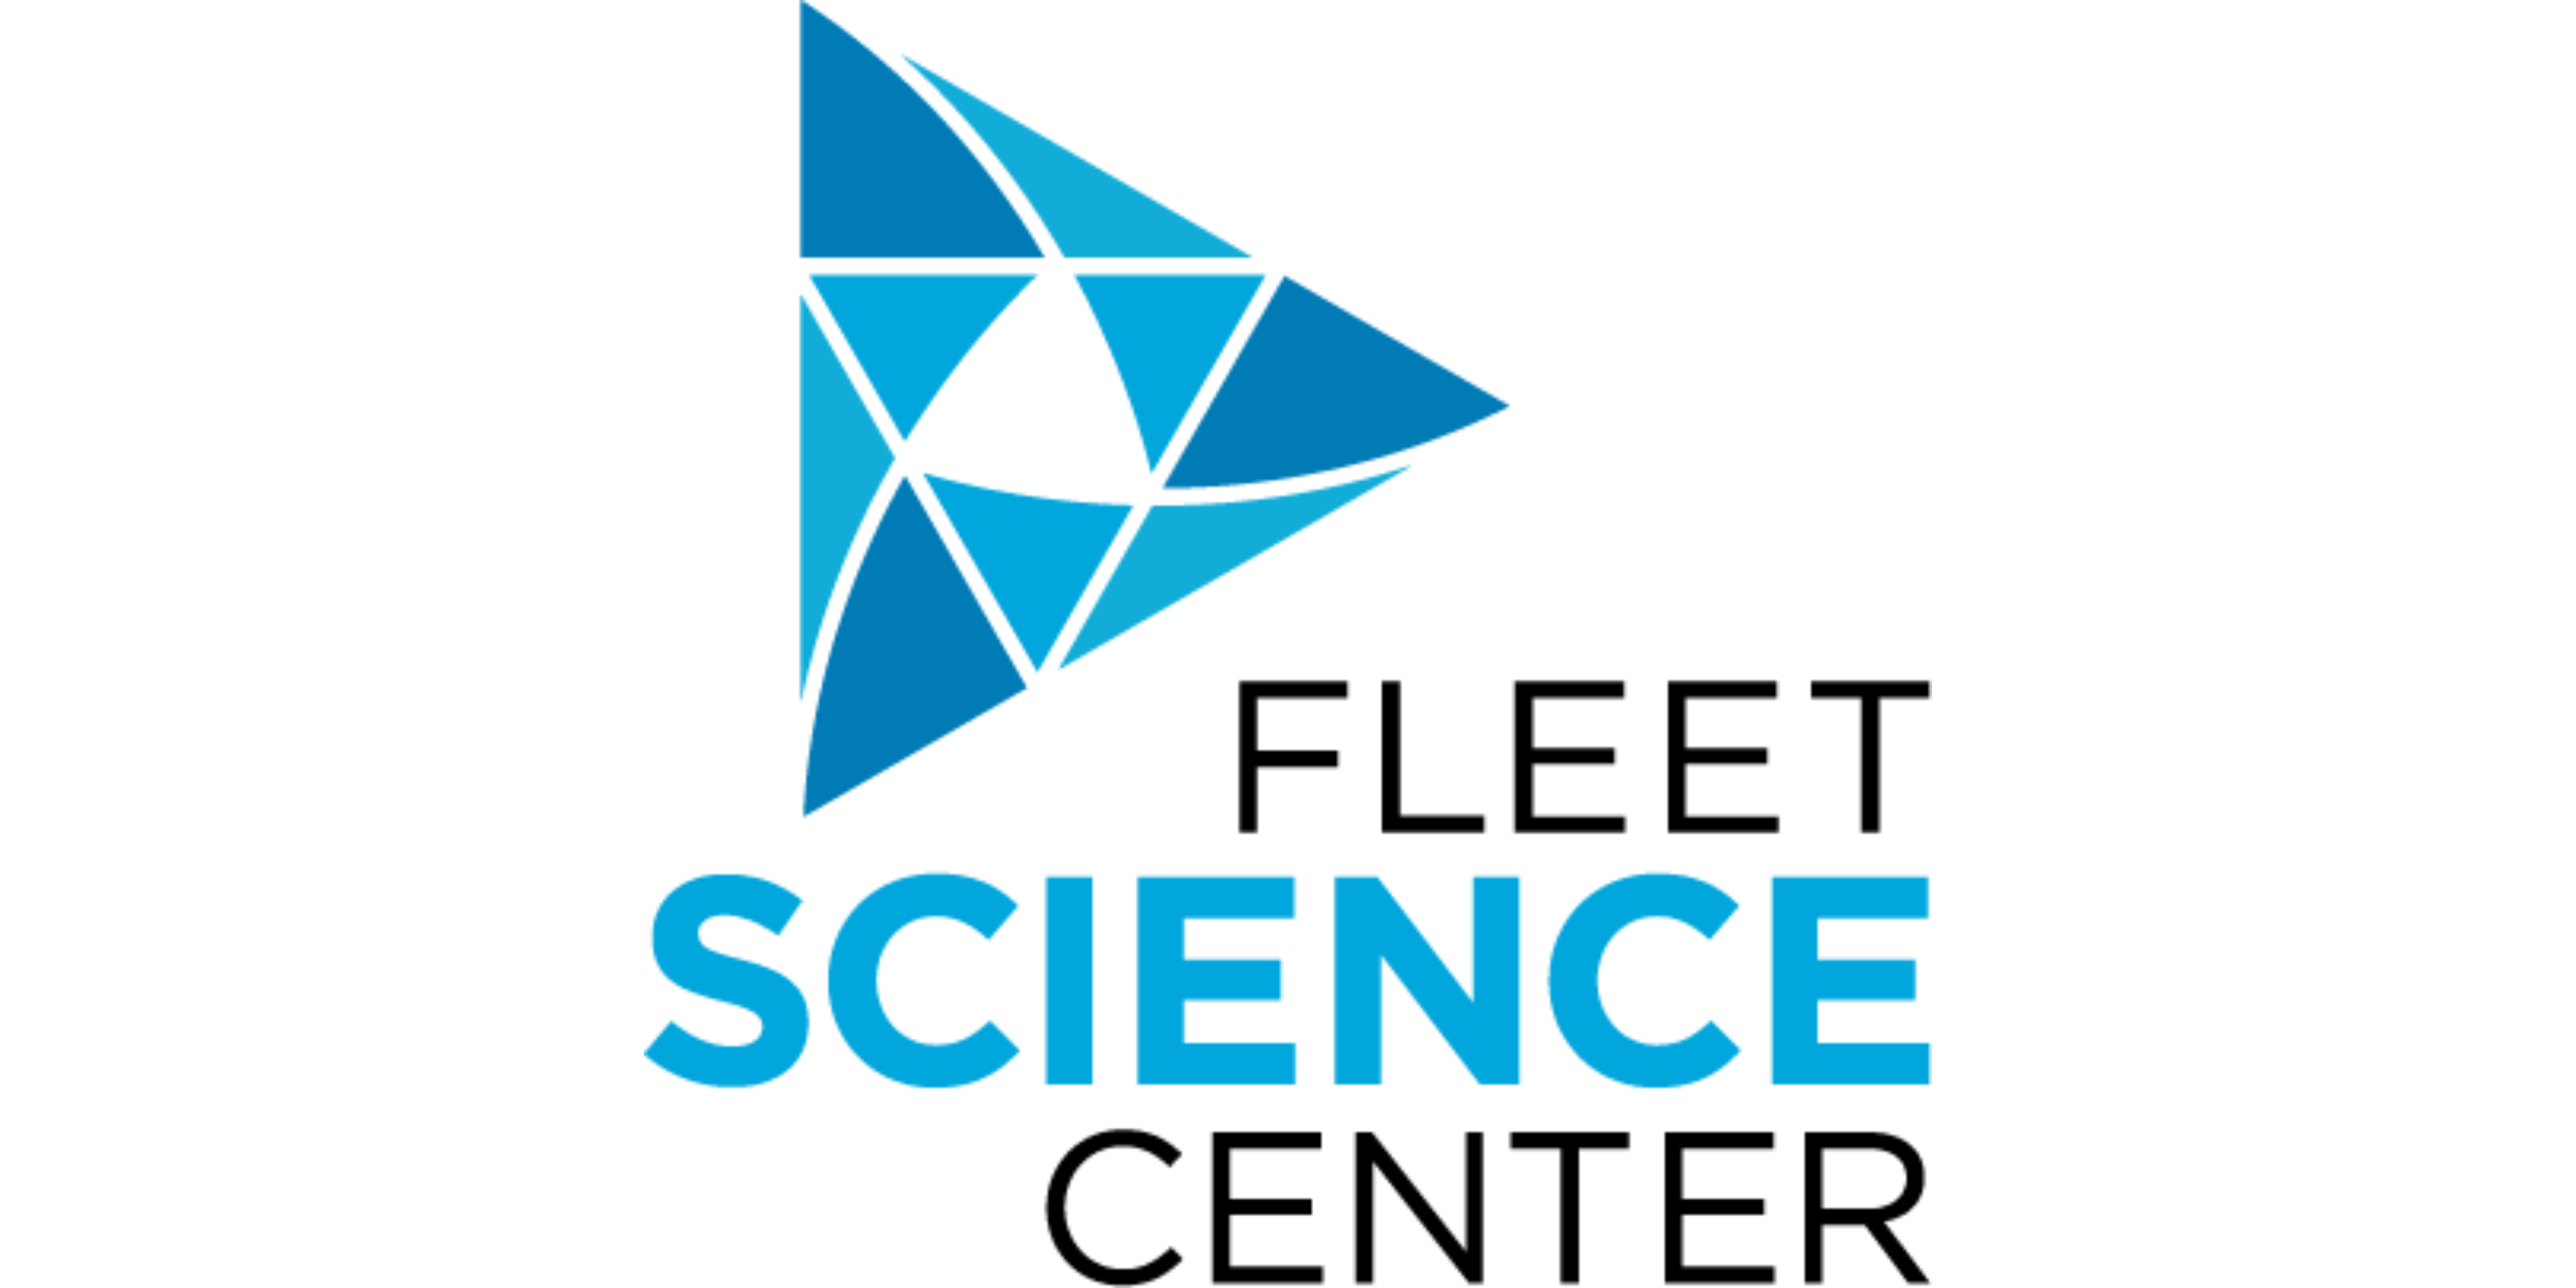 Fleet science center logo